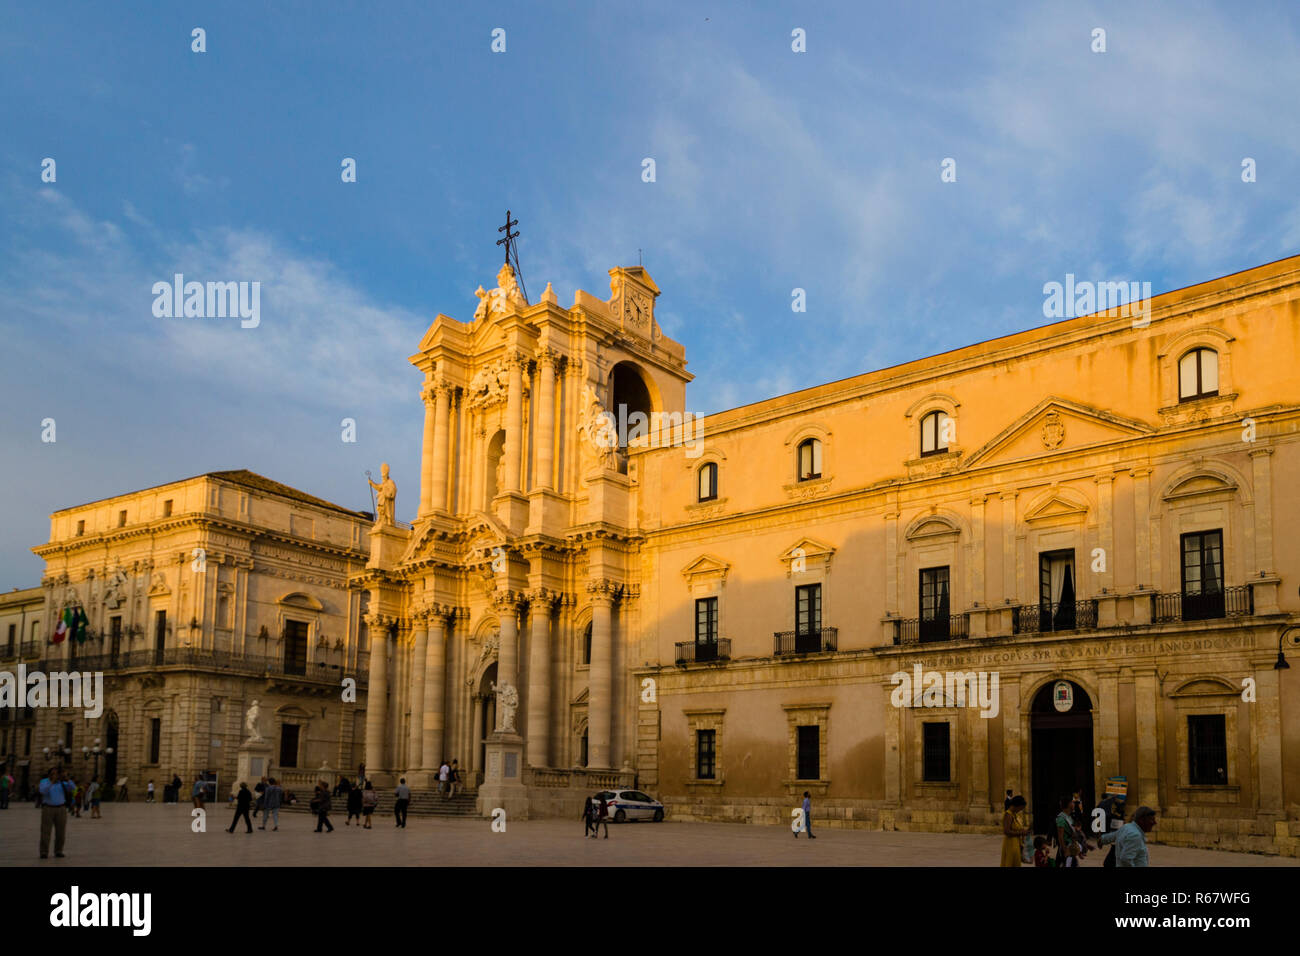 La Piazza del Duomo, Siracusa, Sicilia, Italia Foto de stock